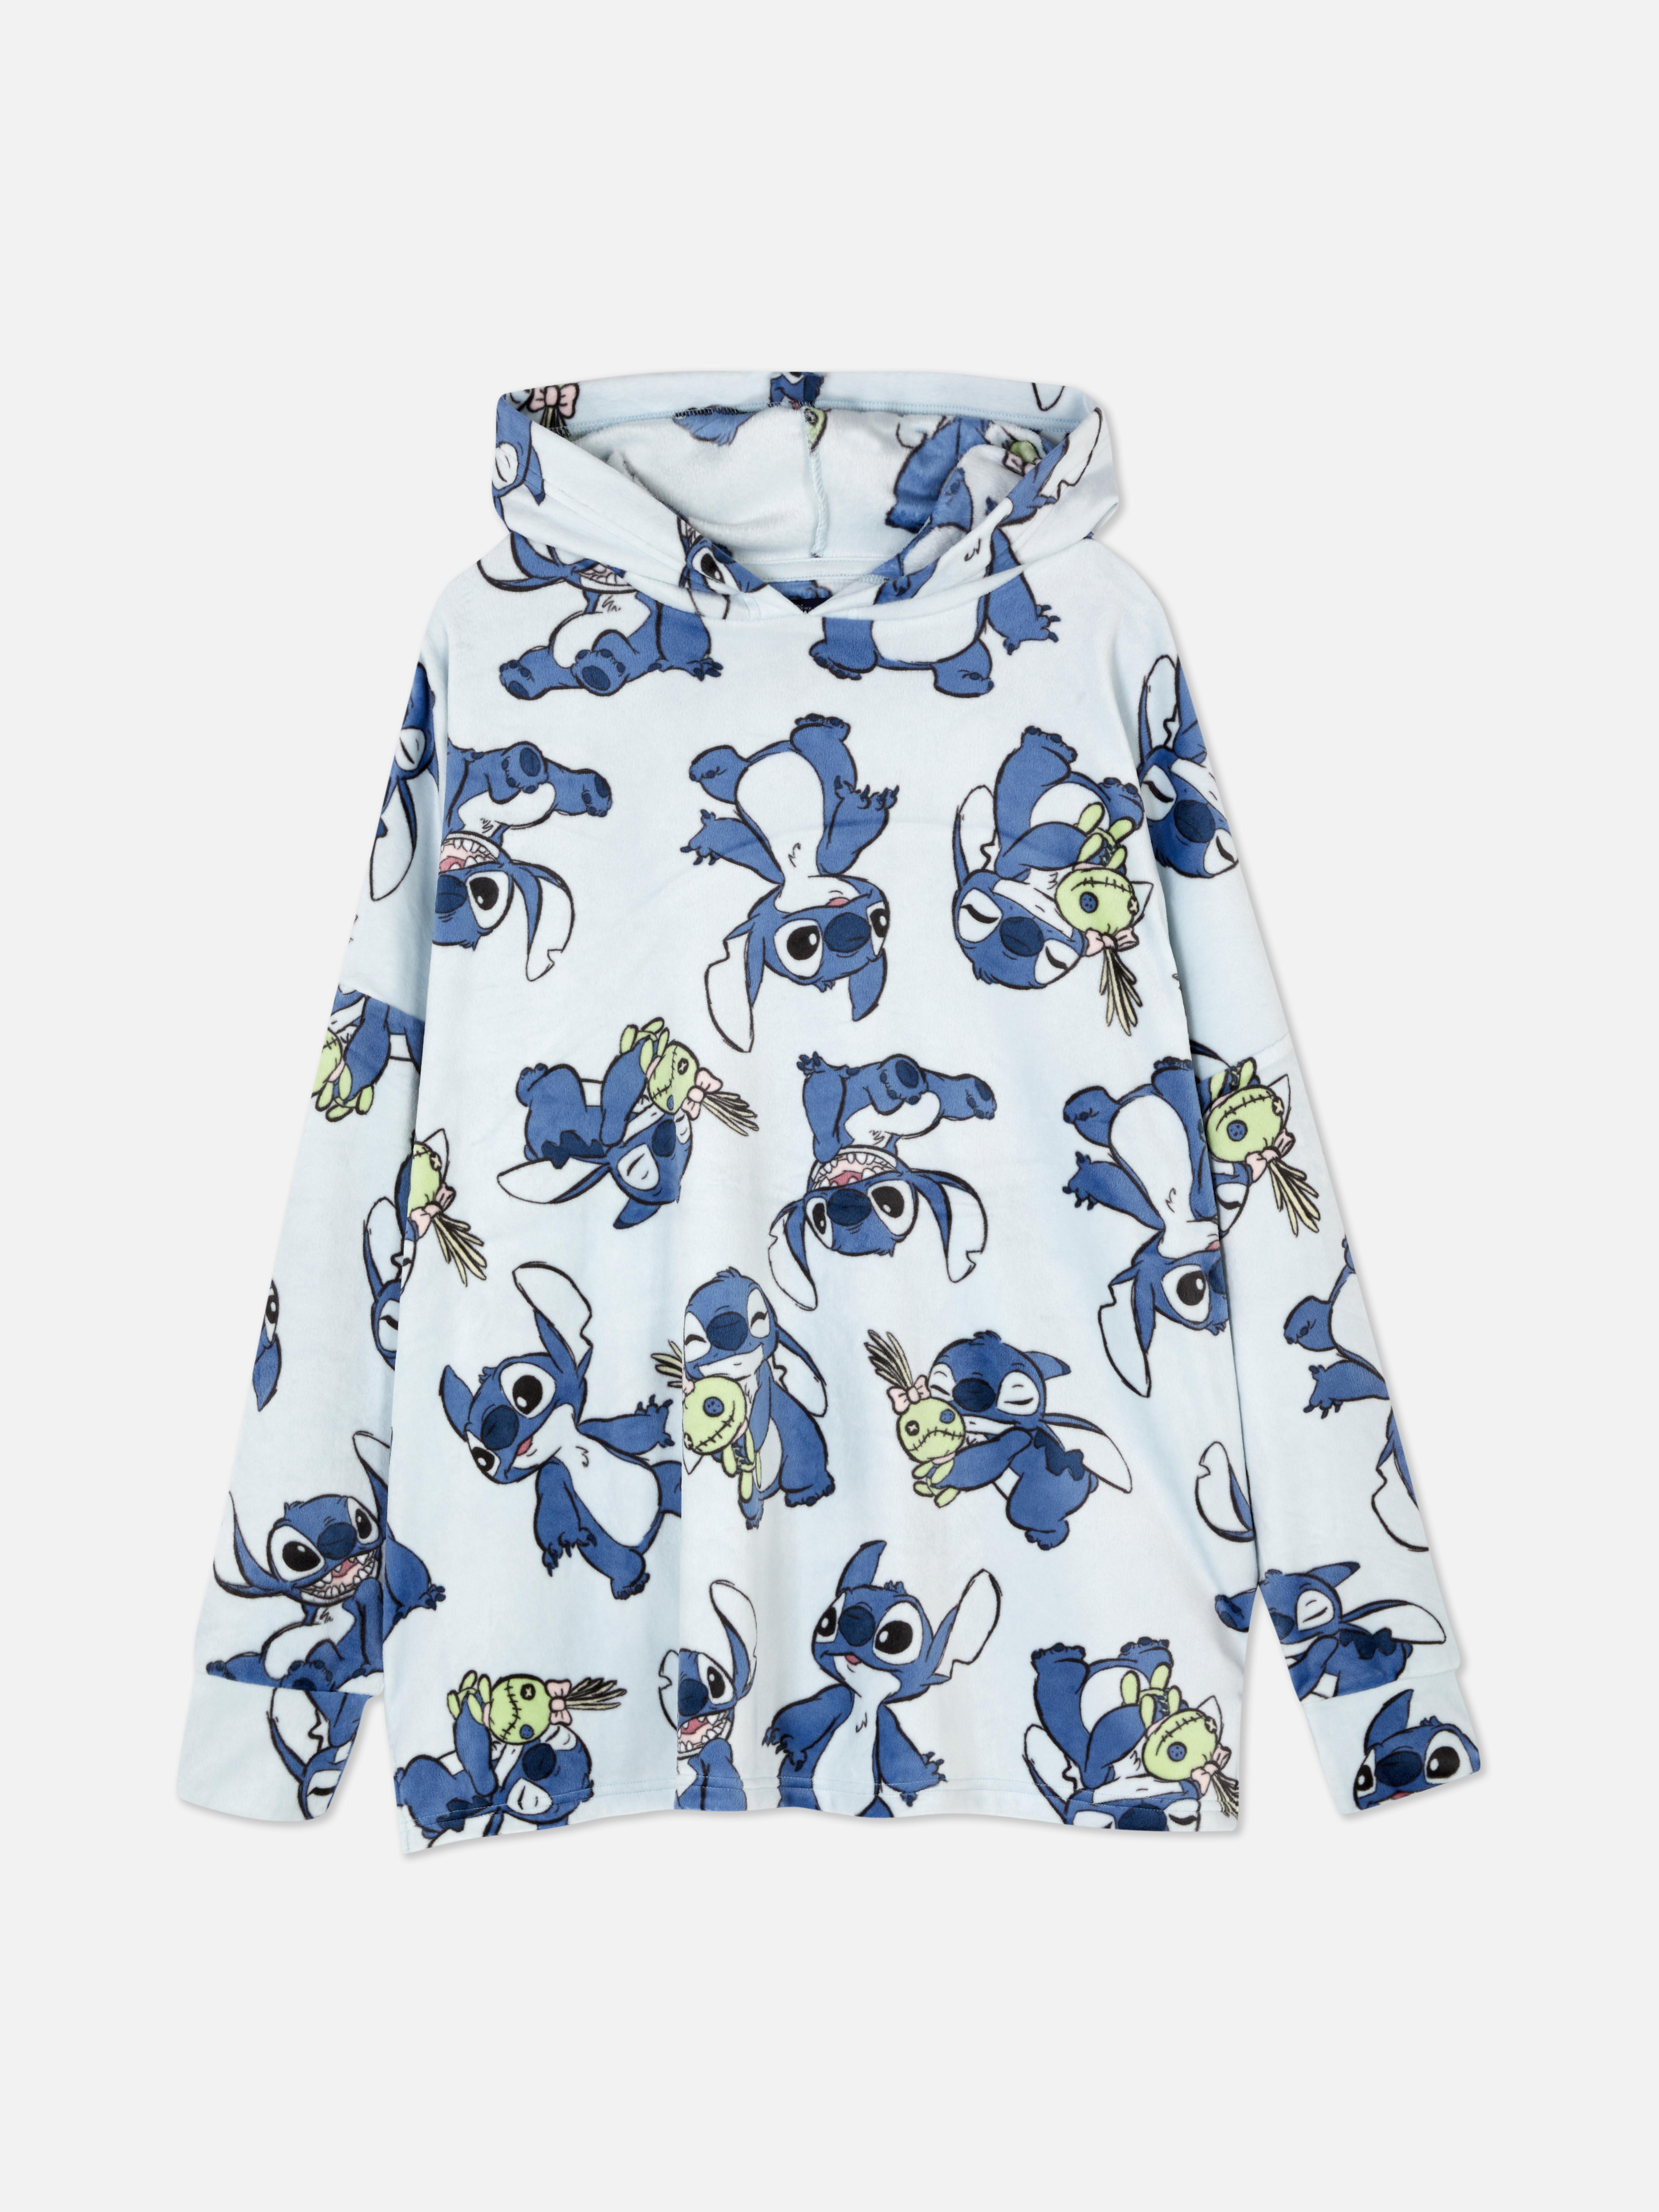 Camisola capuz loungewear Disney Lilo & Stitch